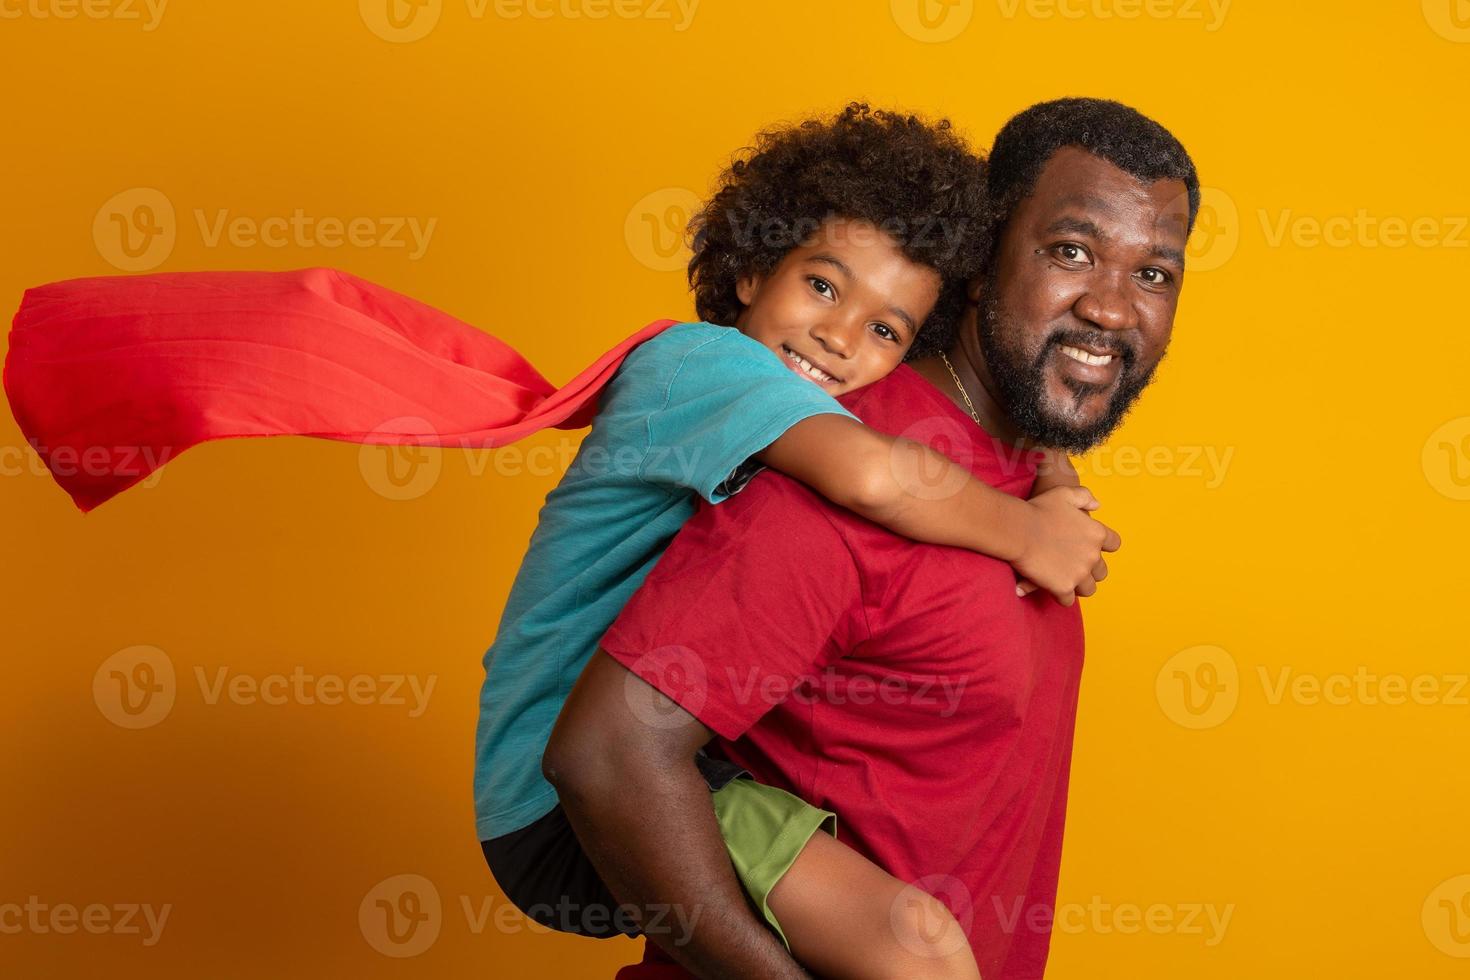 padre e figlio africani che giocano a supereroi durante il giorno. persone che si divertono su sfondo giallo. concetto di famiglia amichevole. foto